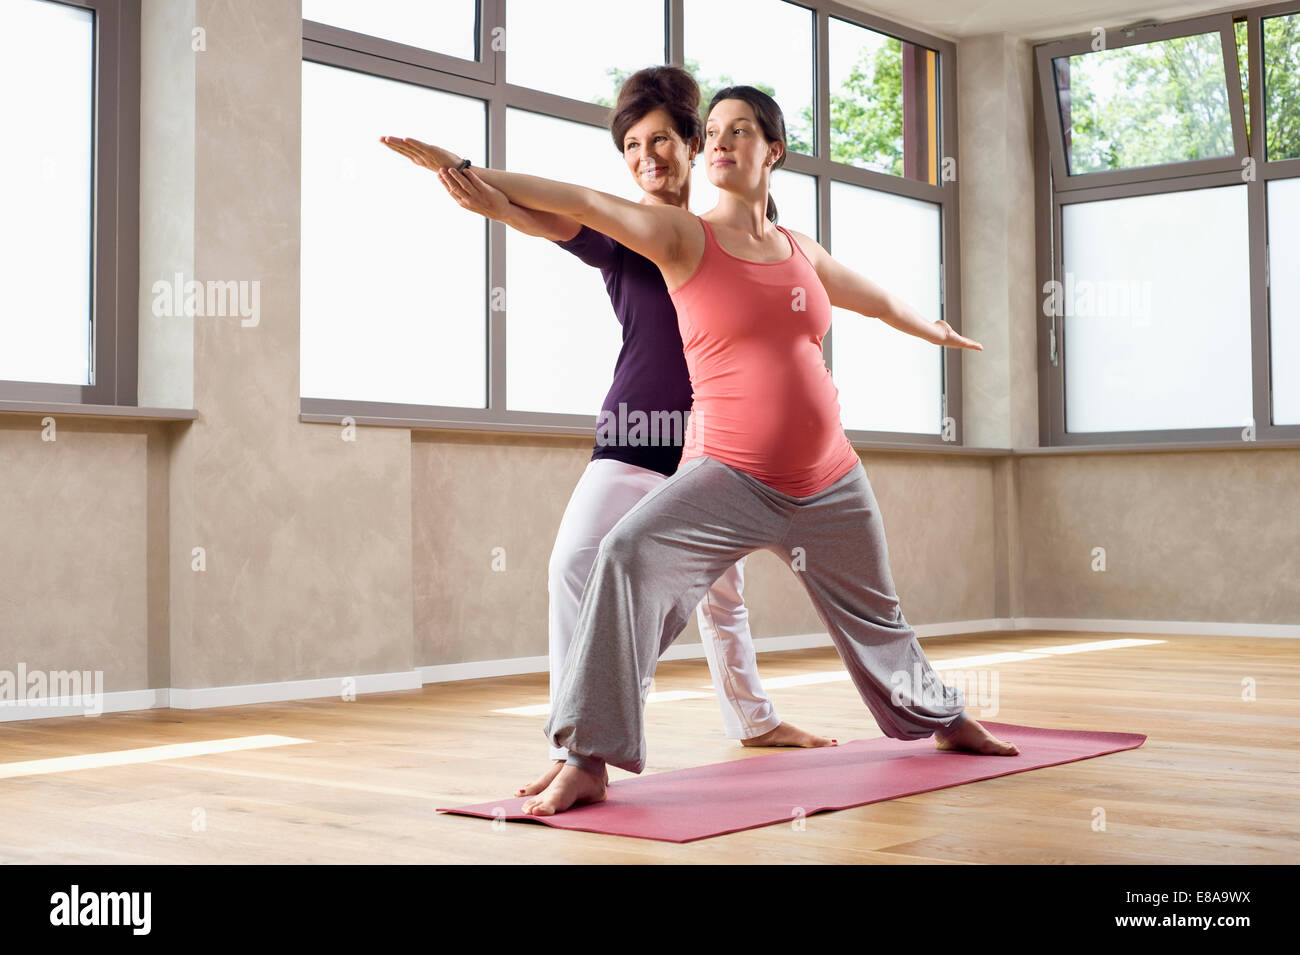 Enseignement formateur exercices de yoga femme enceinte Banque D'Images